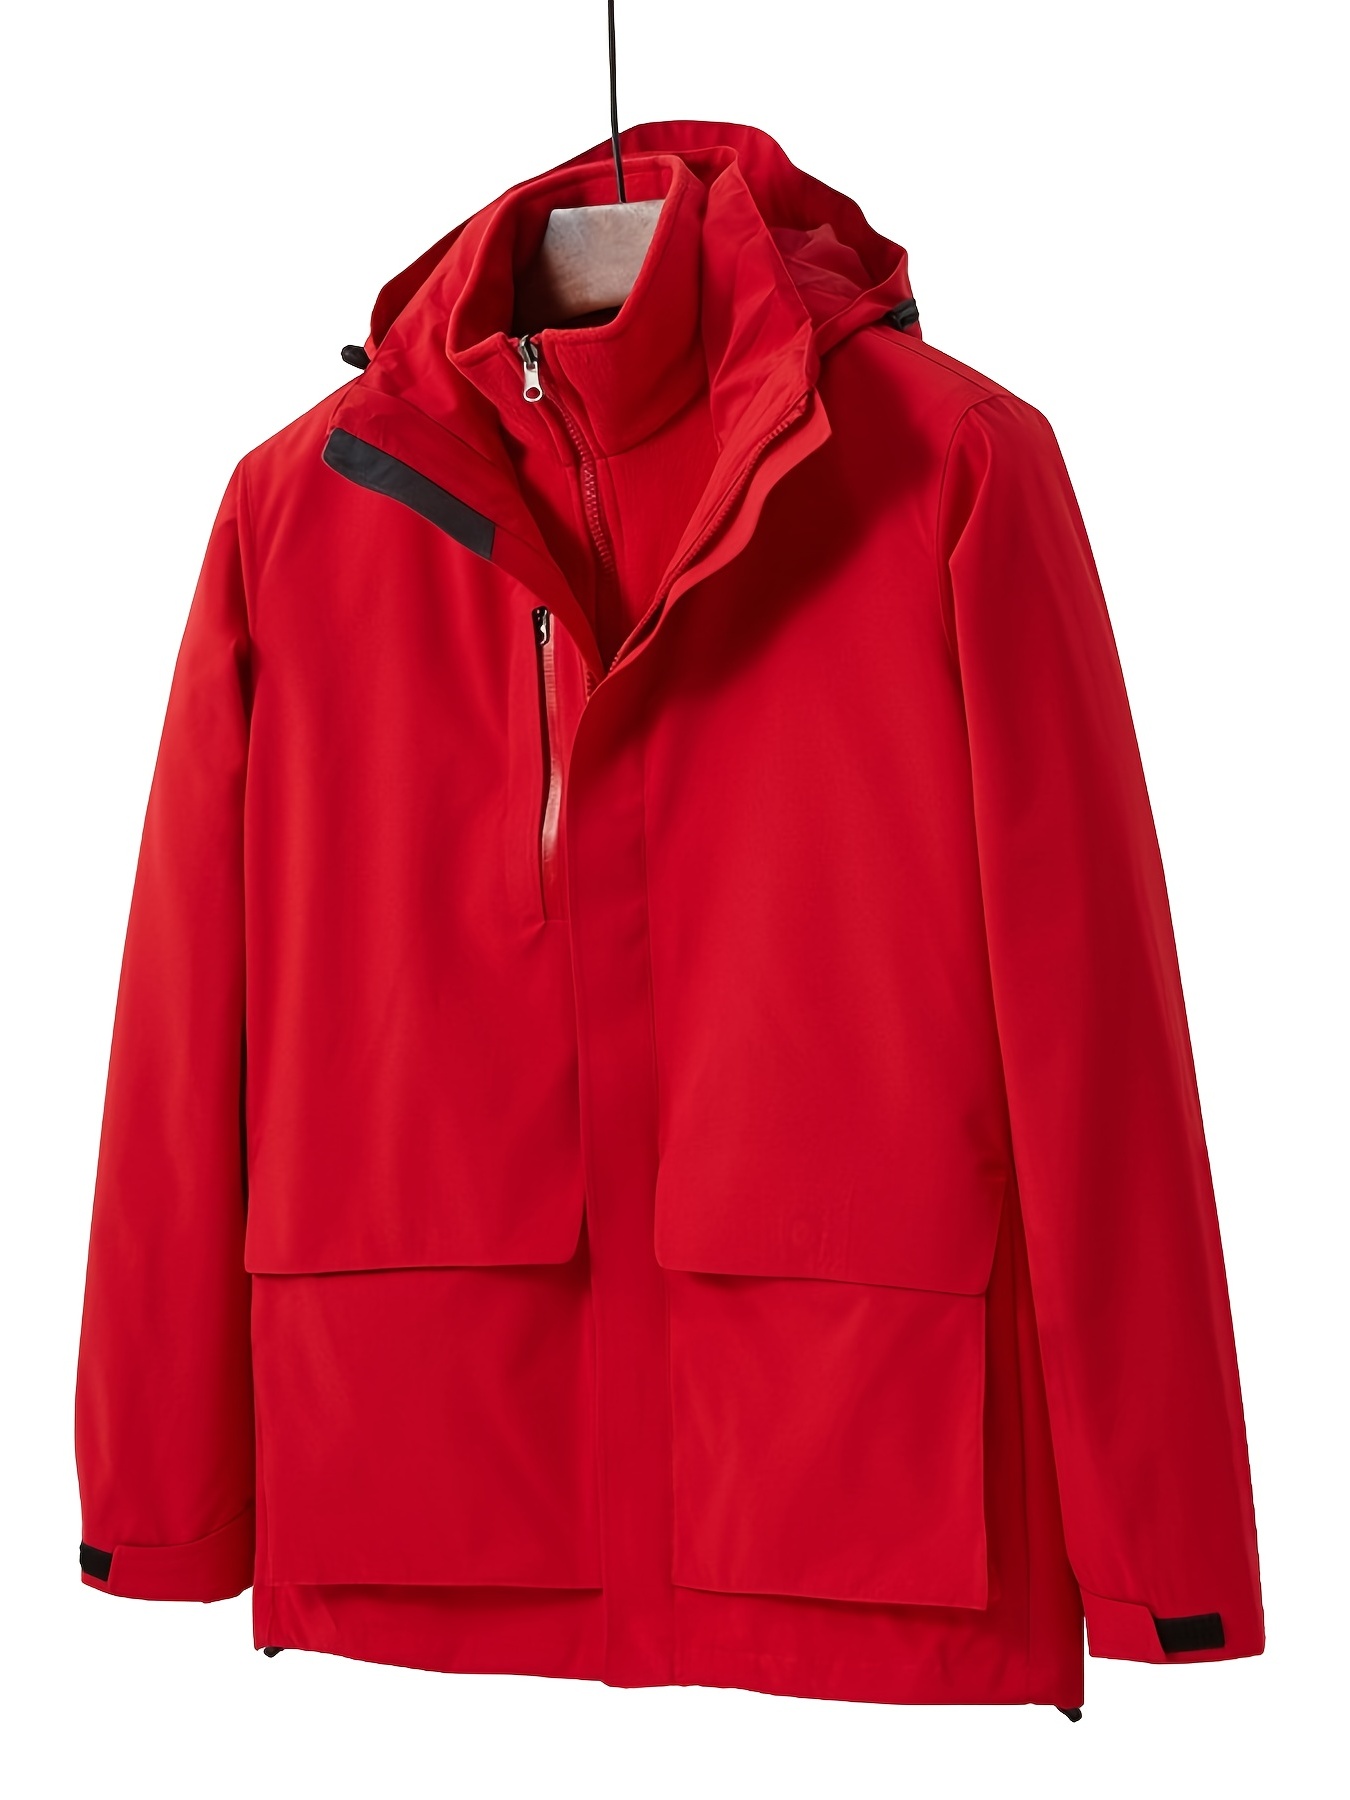 Mens Outdoor Jacket Waterproof Windproof Rain Coat Winter Cold